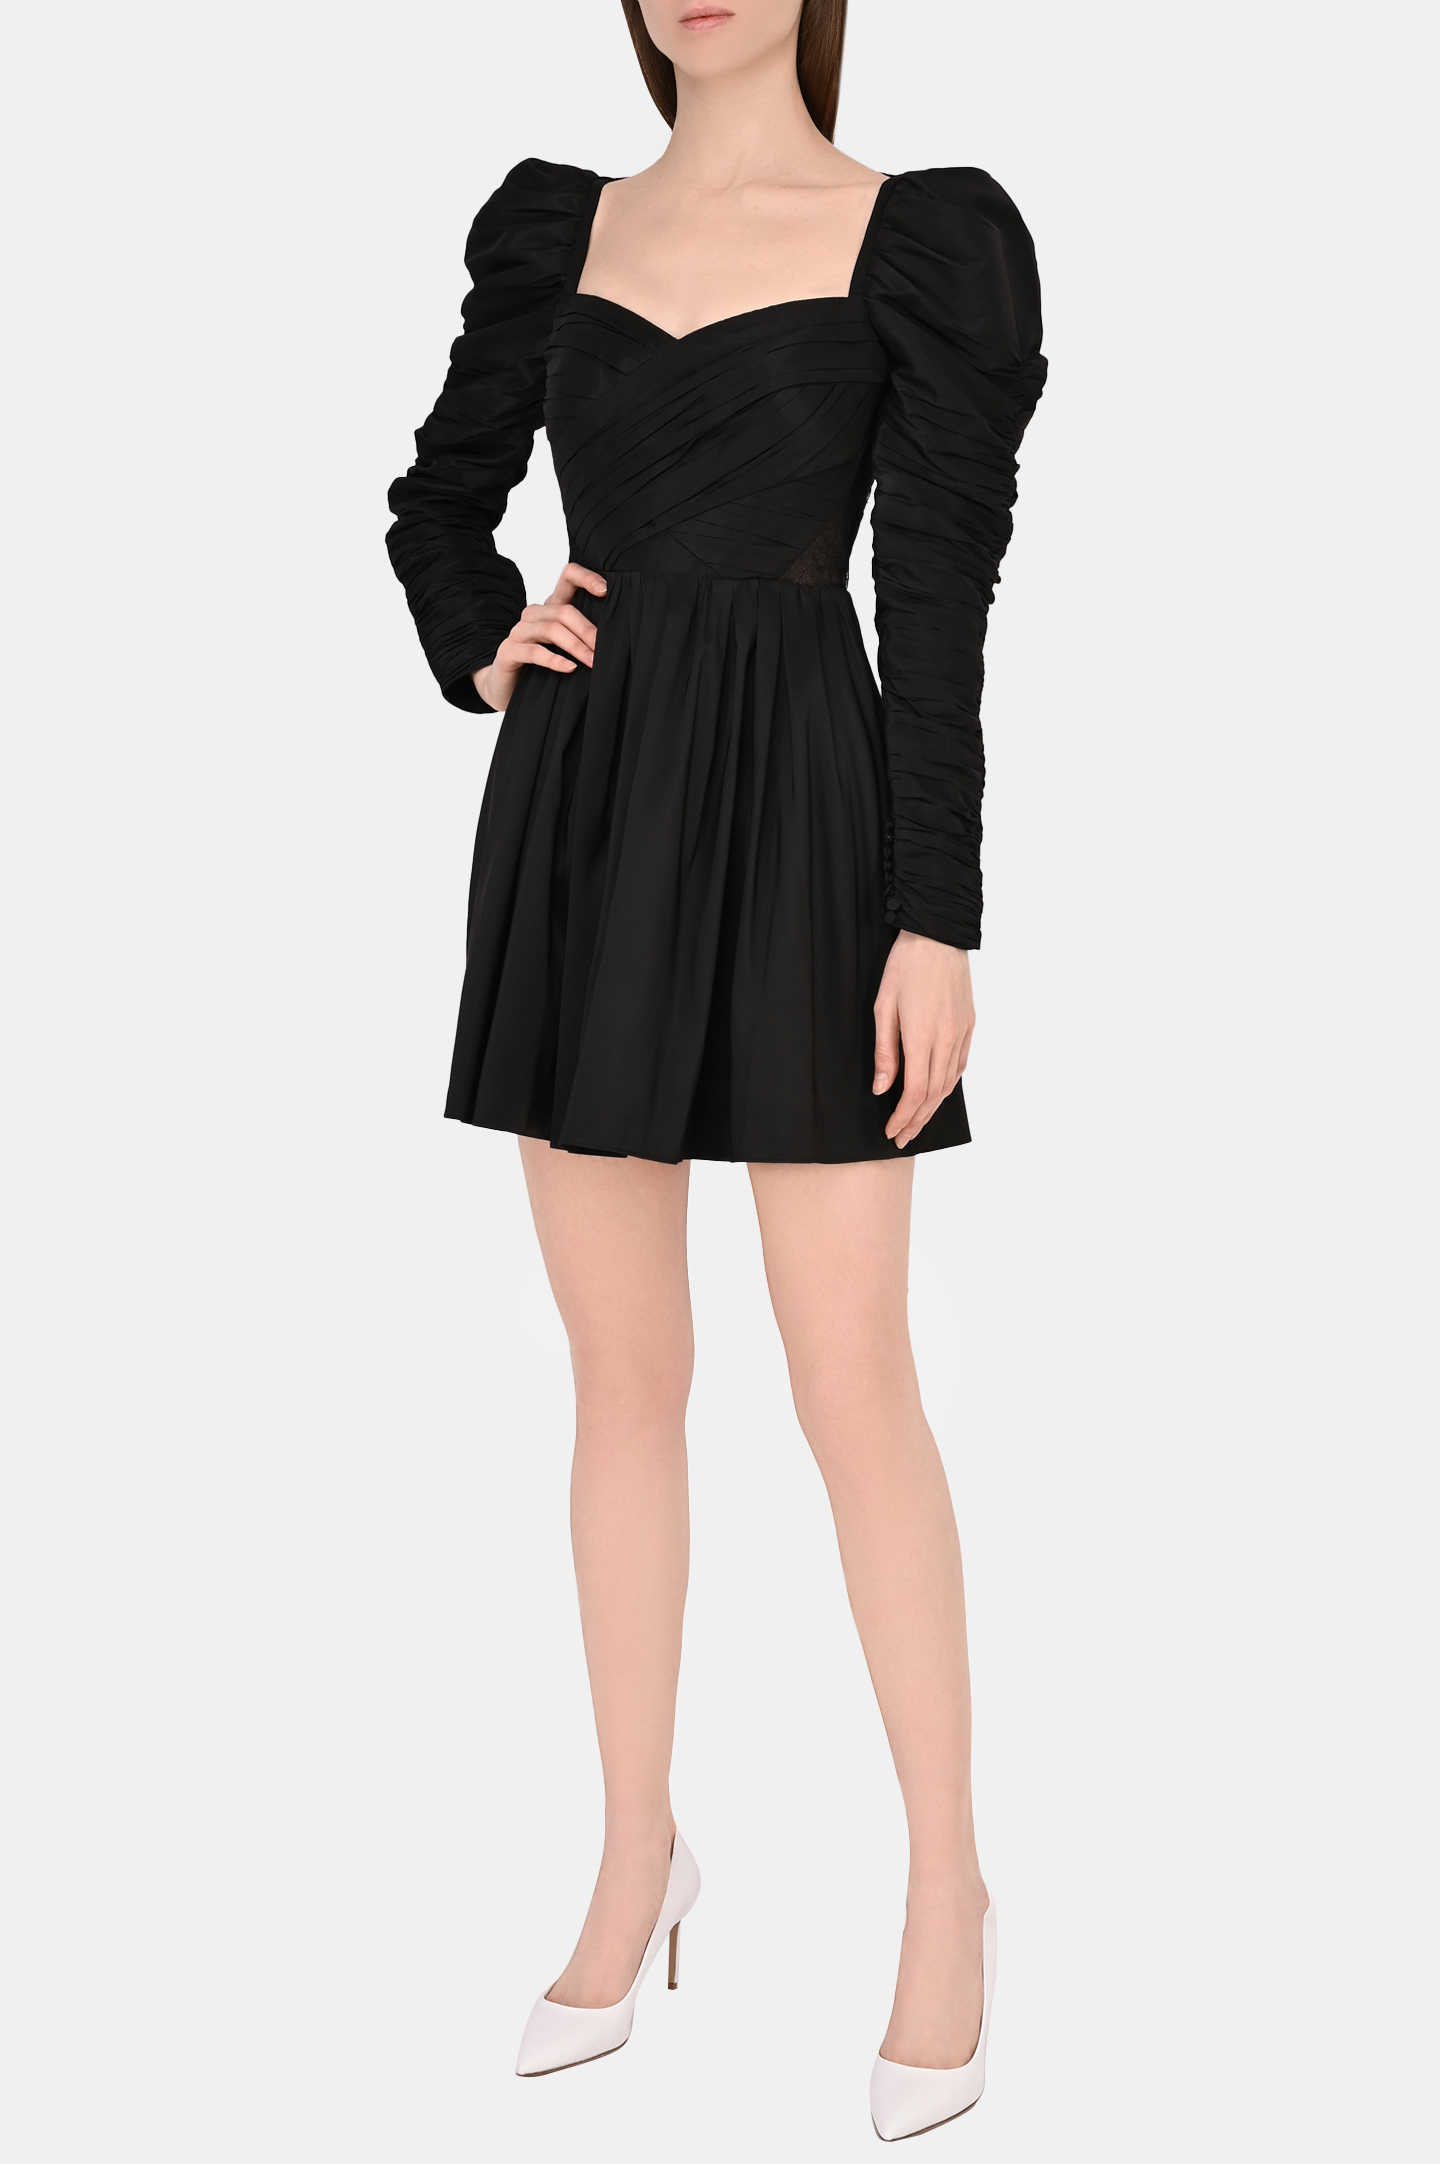 Платье SELF PORTRAIT RS22-067, цвет: Черный, Женский